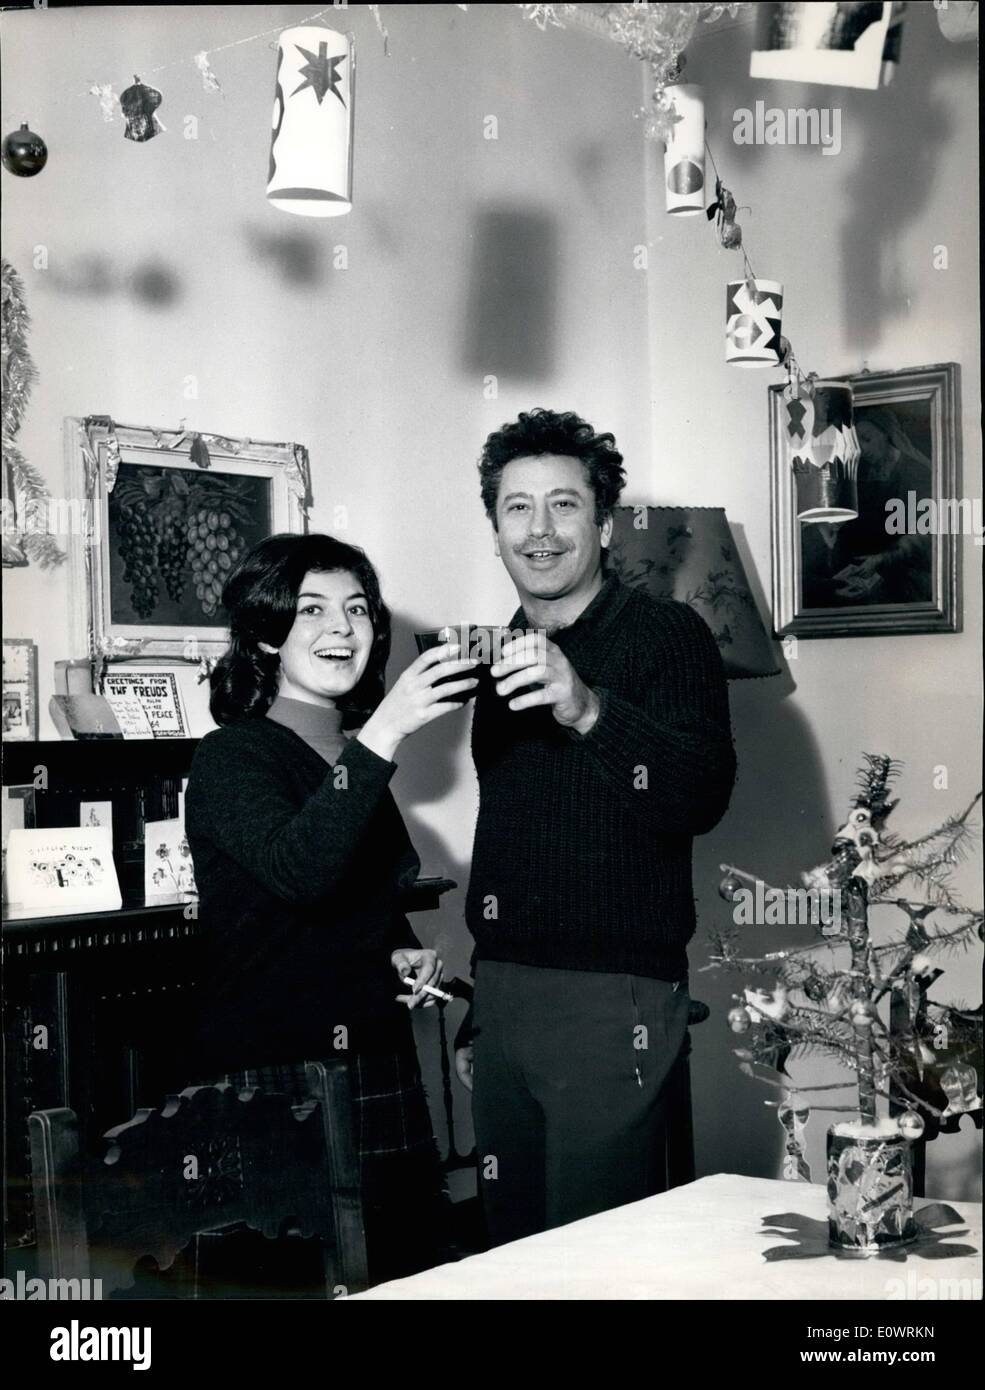 Le 12 décembre 1963 - Frank Wolff, l'Italo-acteur américain qui est devenu l'un des principaux nouveaux acteurs du cinéma italien pour son rôle dans ''processo di Verona'' va attendre la nouvelle année à la maison avec sa jeune épouse. Il souhaite une Bonne et heureuse 1964. Banque D'Images